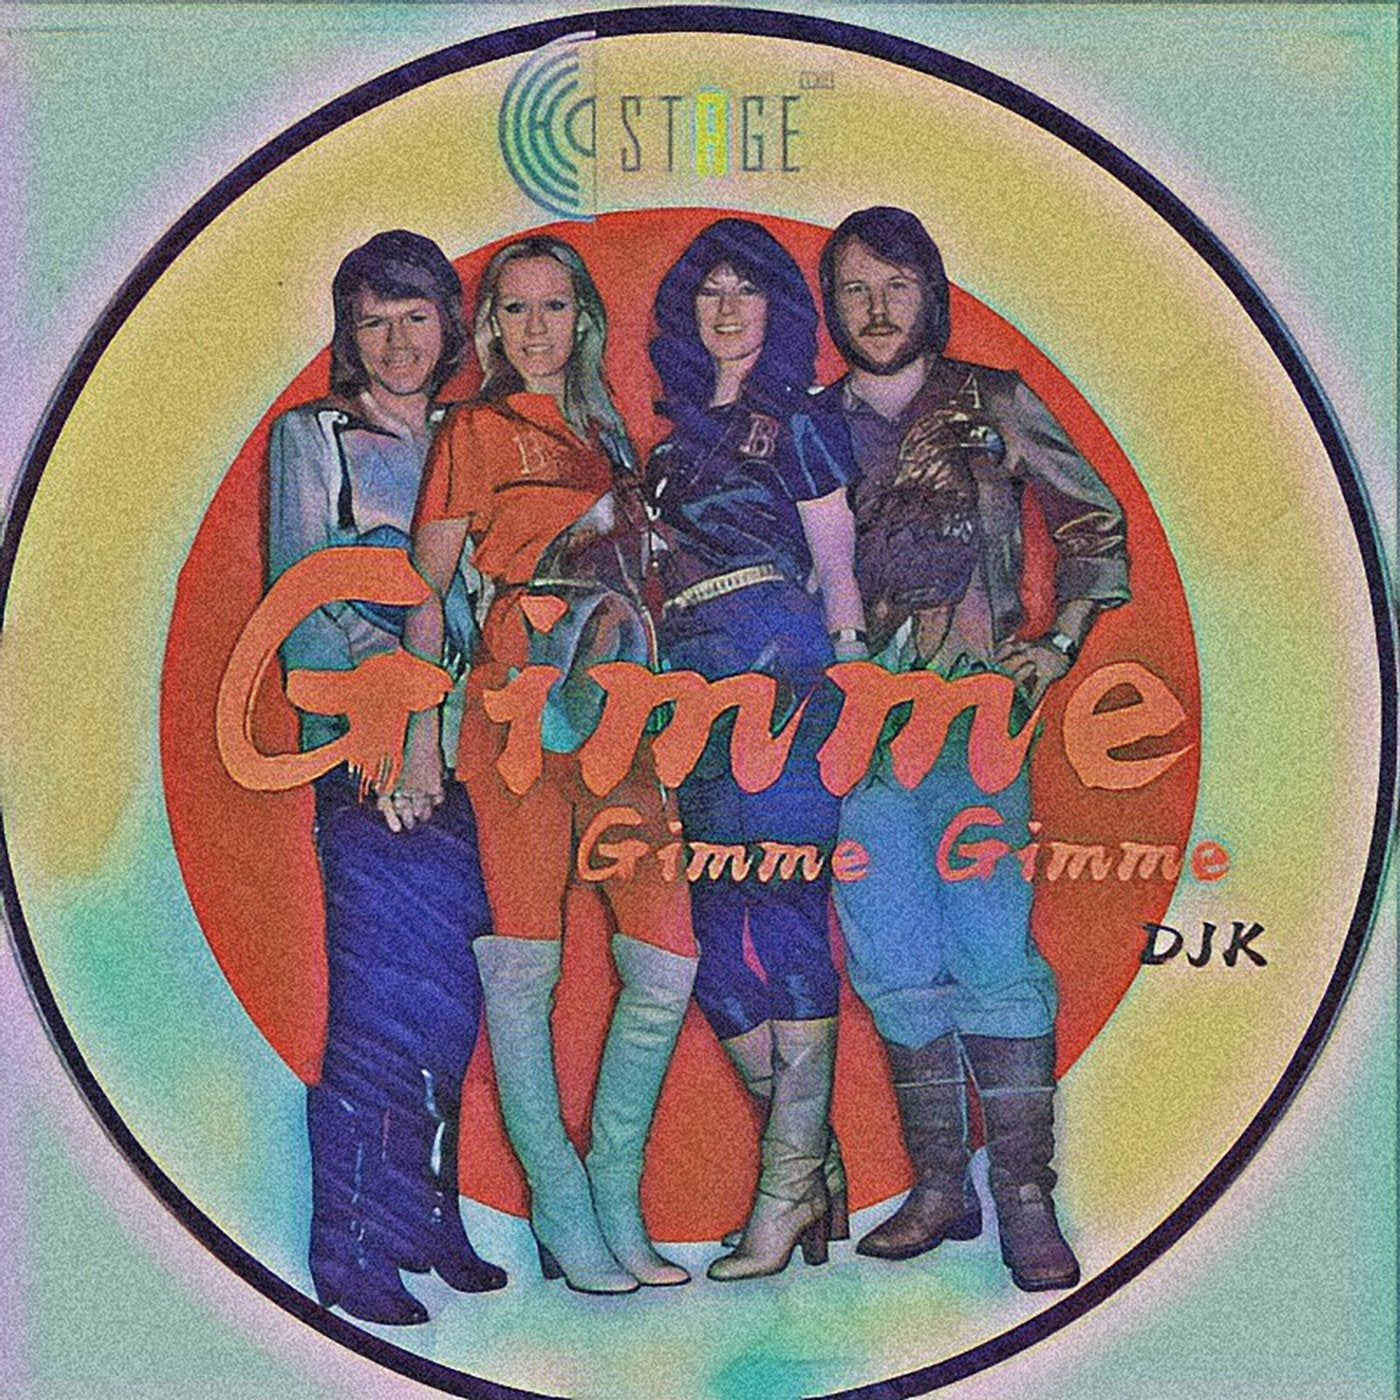 Abba gimme gimme gimme remix. ABBA Gimme Gimme Gimme. ABBA Gimme Gimme. Gimme.